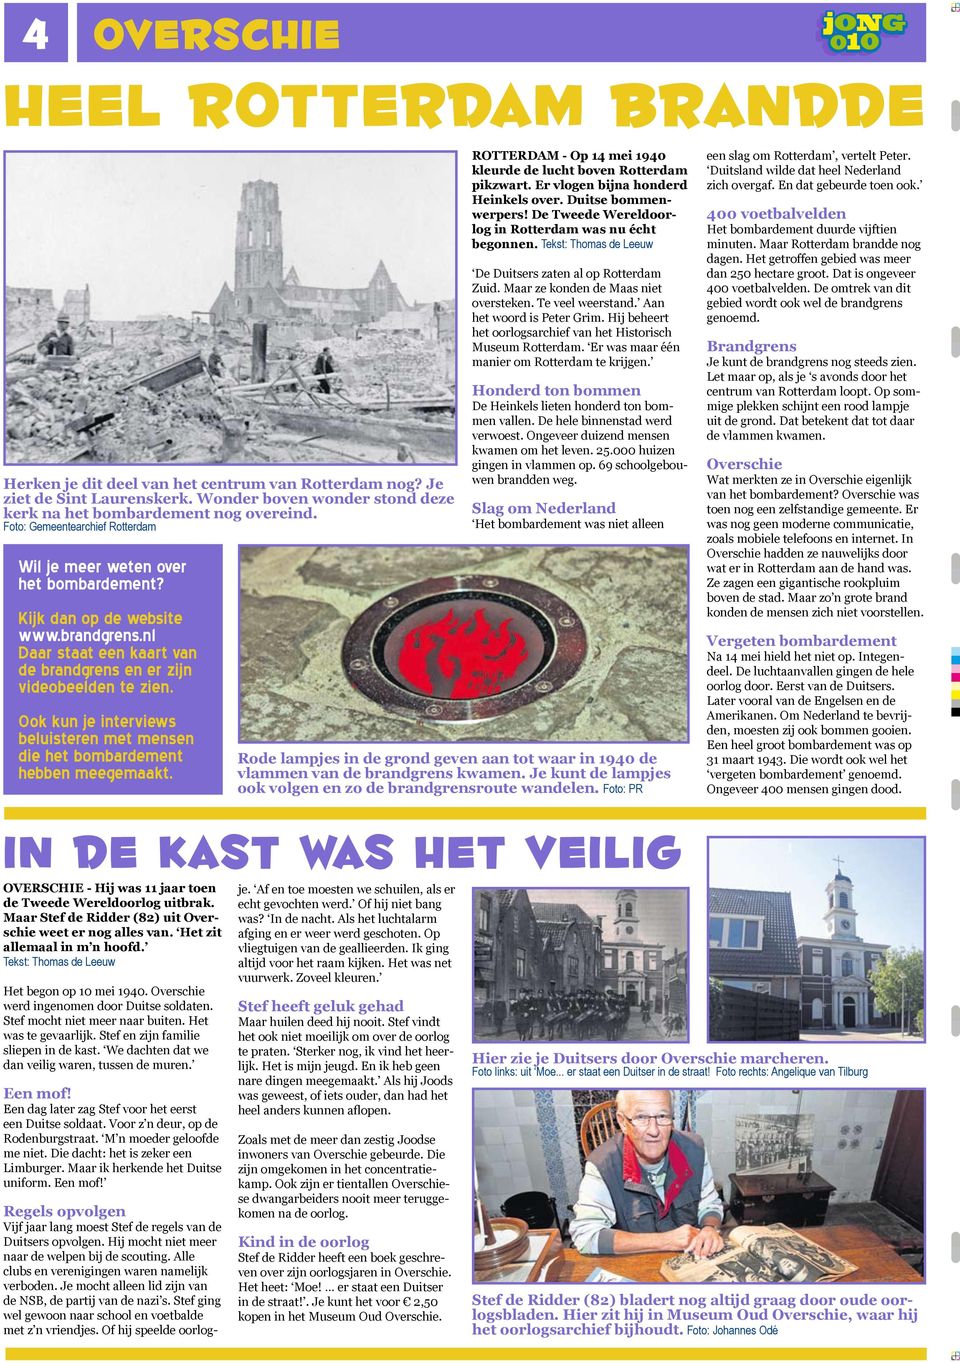 Ook kun je interviews beluisteren met mensen die het bombardement hebben meegemaakt. ROTTERDAM - Op 14 mei 1940 kleurde de lucht boven Rotterdam pikzwart. Er vlogen bijna honderd Heinkels over.